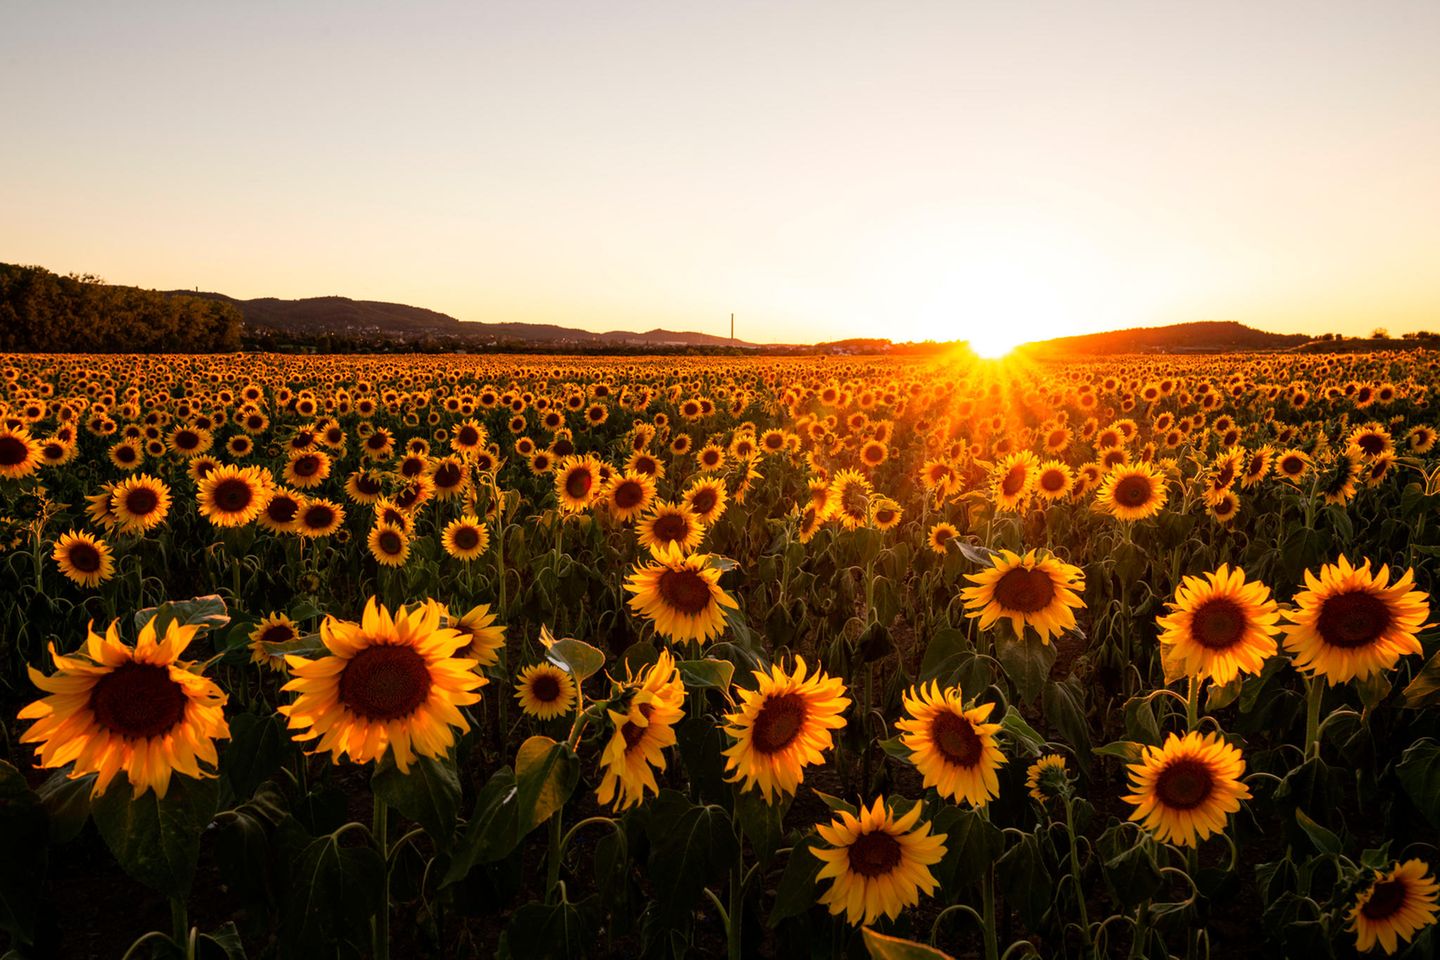 Sonnenblumenfeld in der Goldenen Aue, Südharz